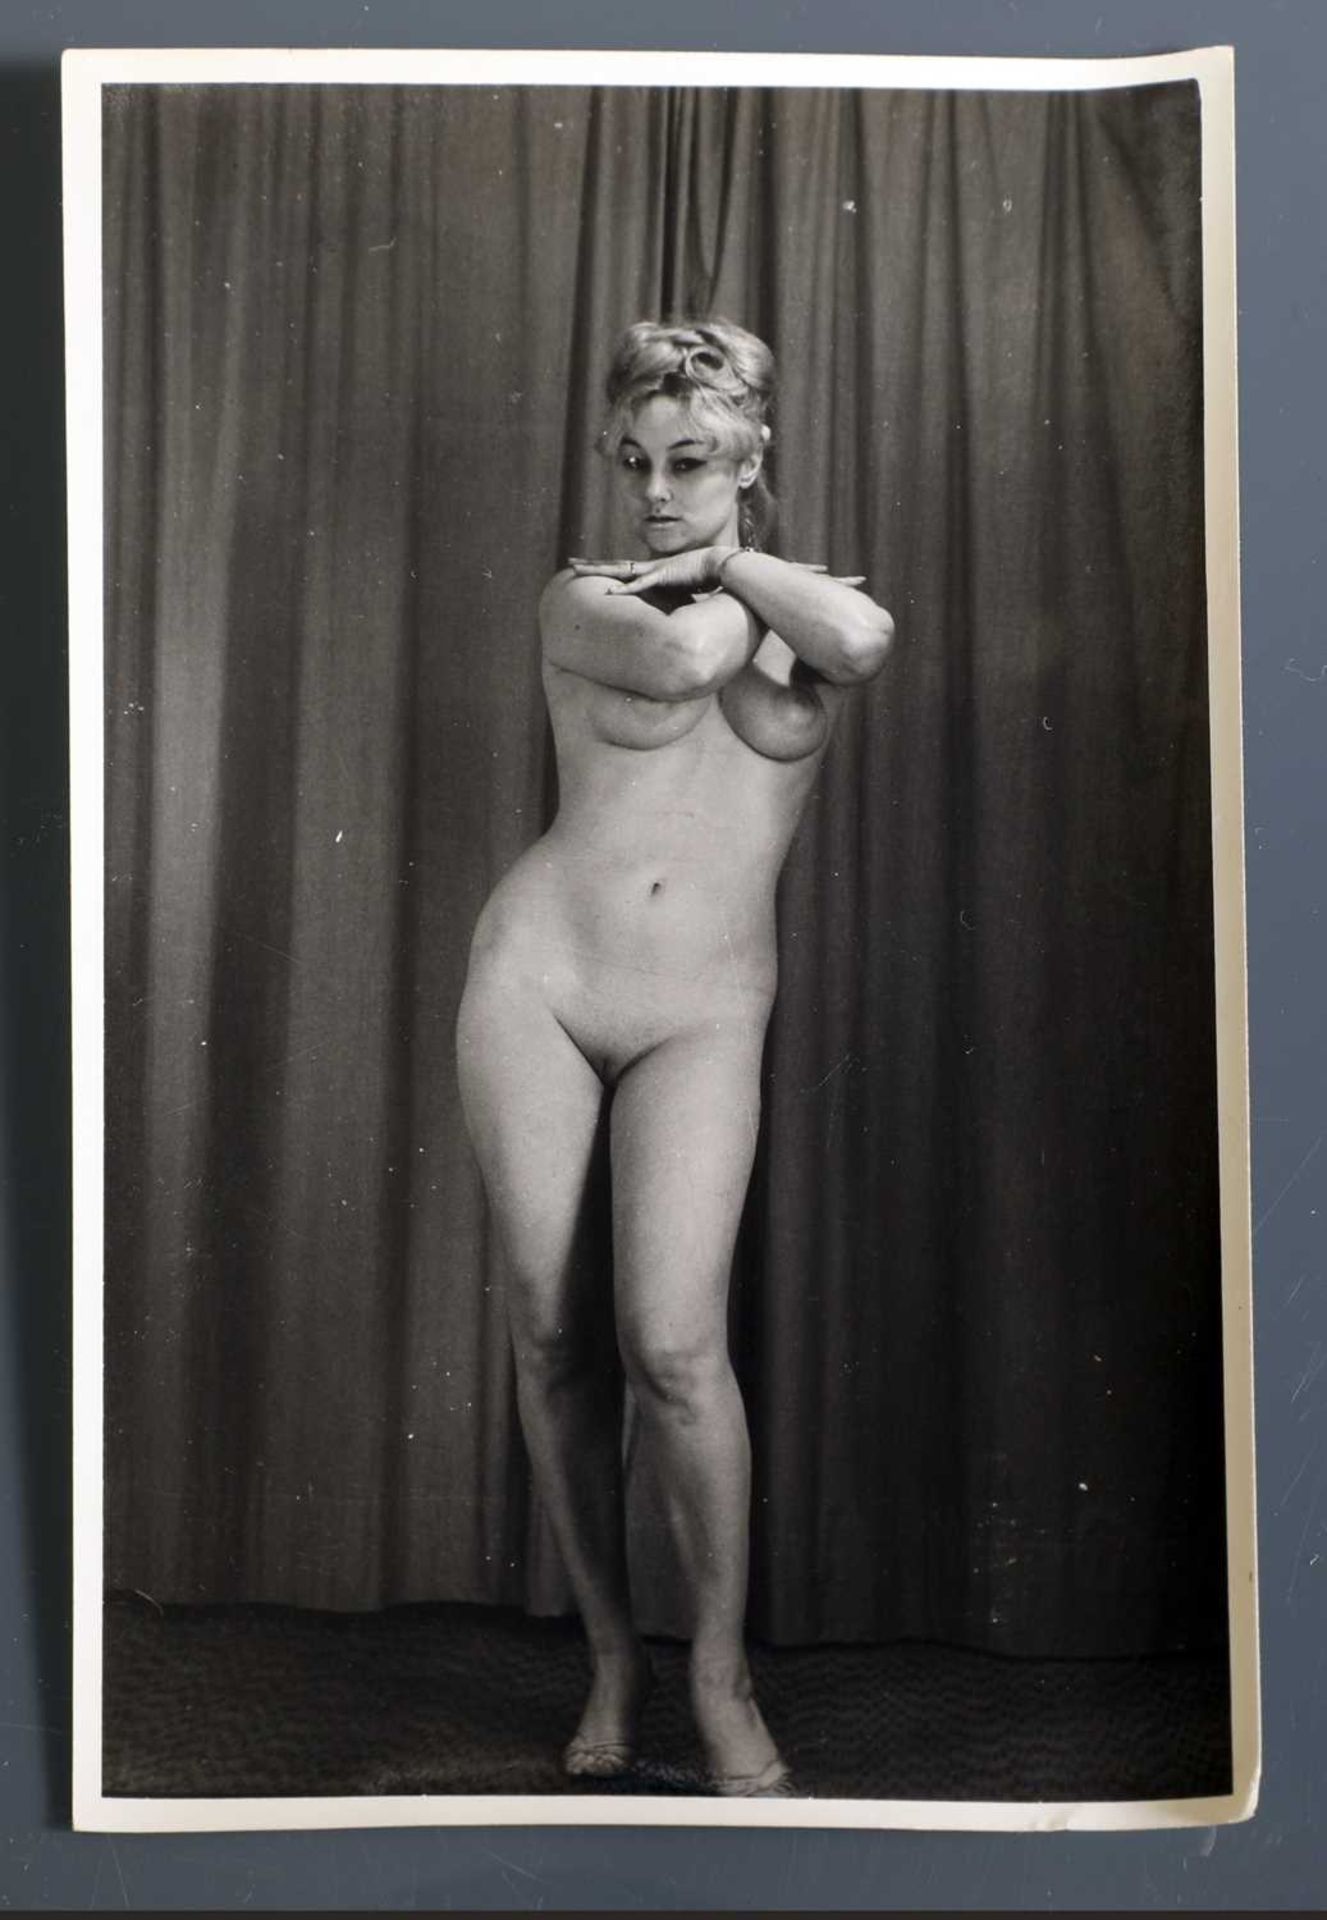 A rare nude studio photograph of Mandy Rice-Davies,